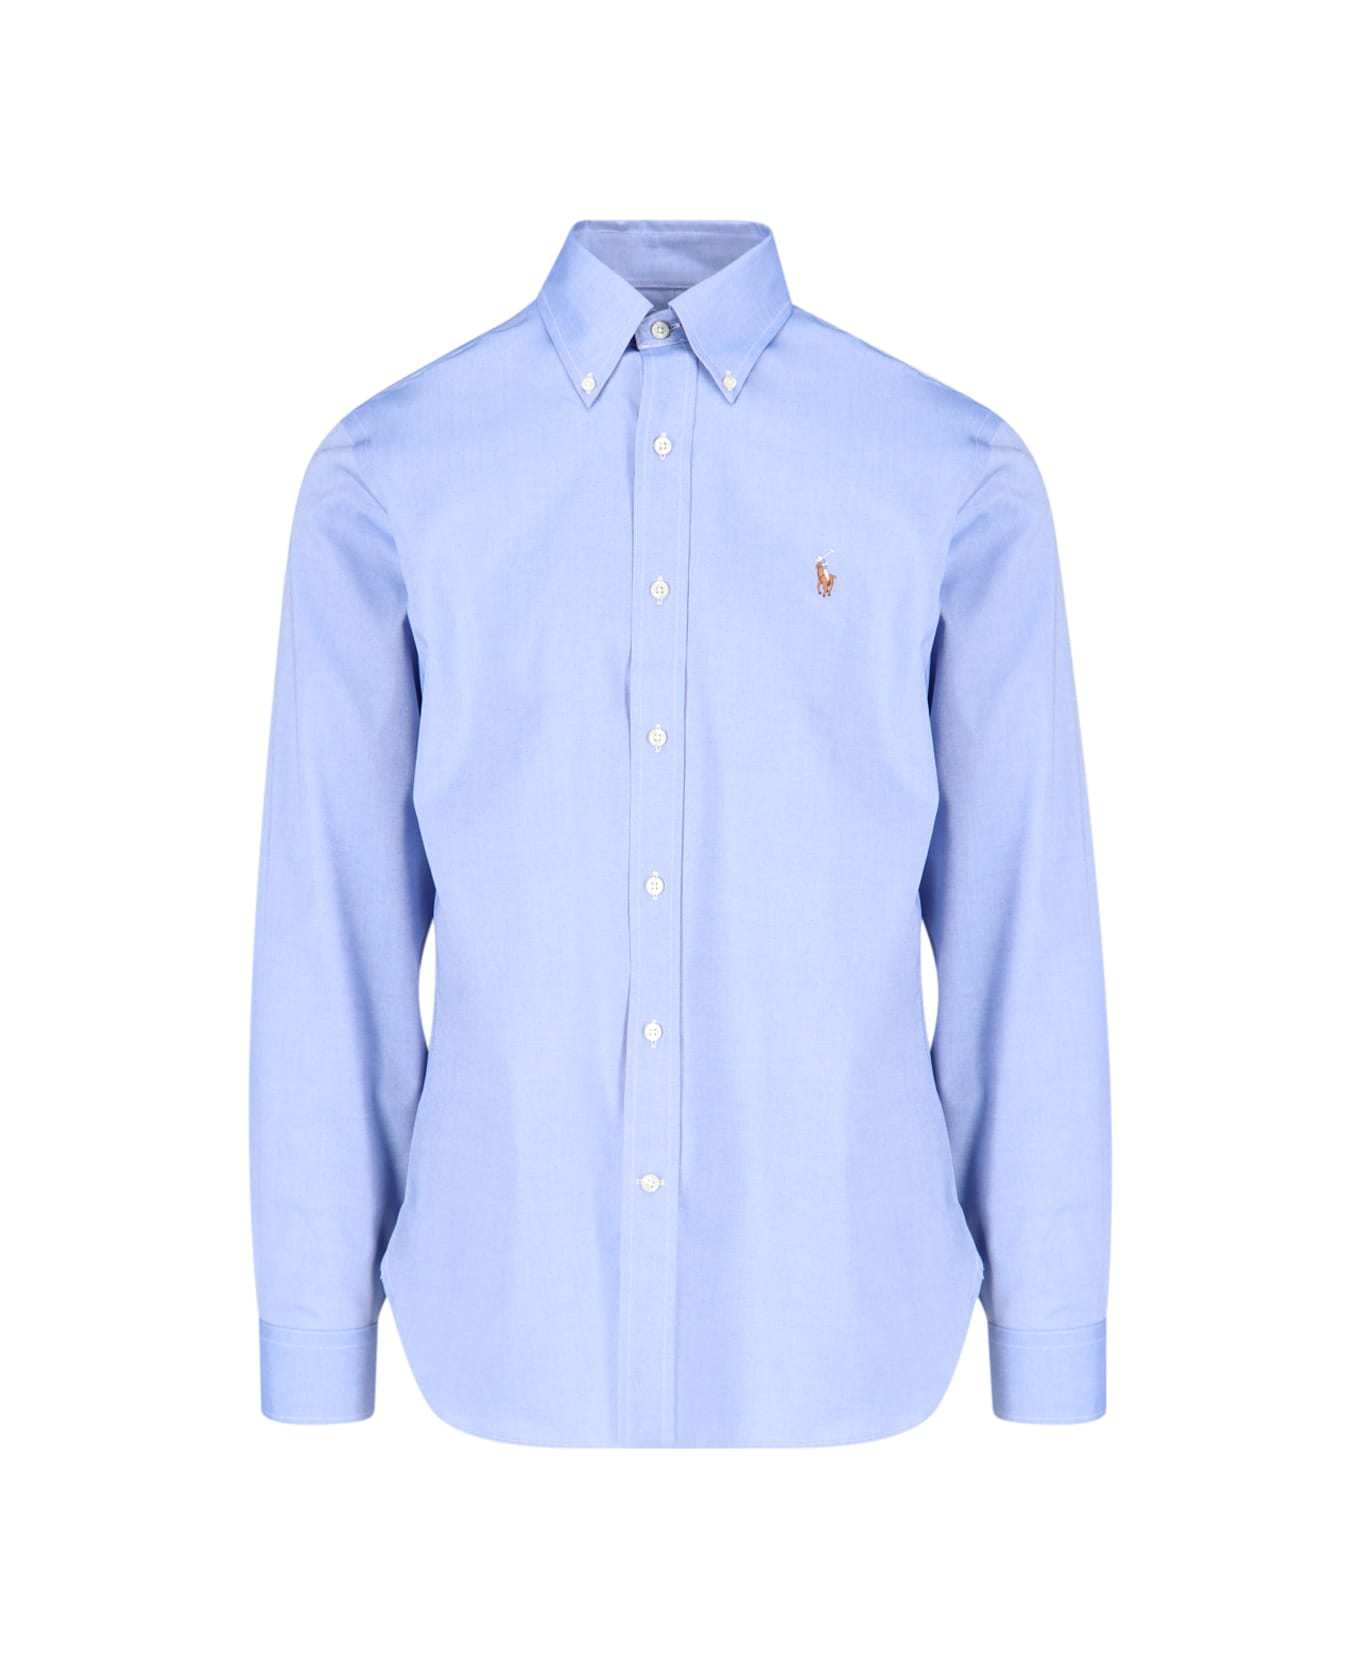 Polo Ralph Lauren Button-down Shirt - Light Blue